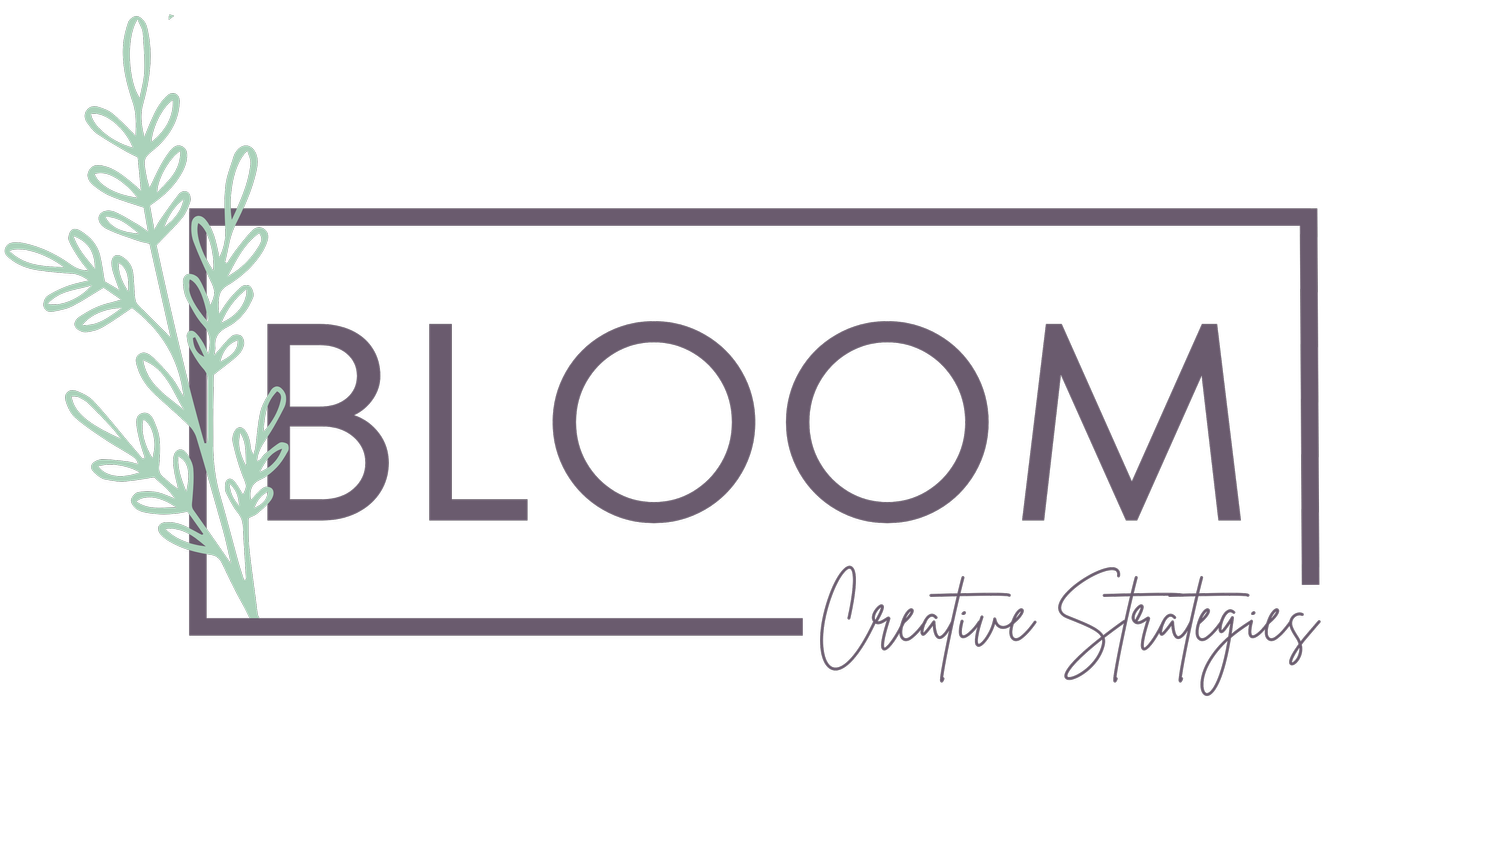 Bloom Creative Strategies